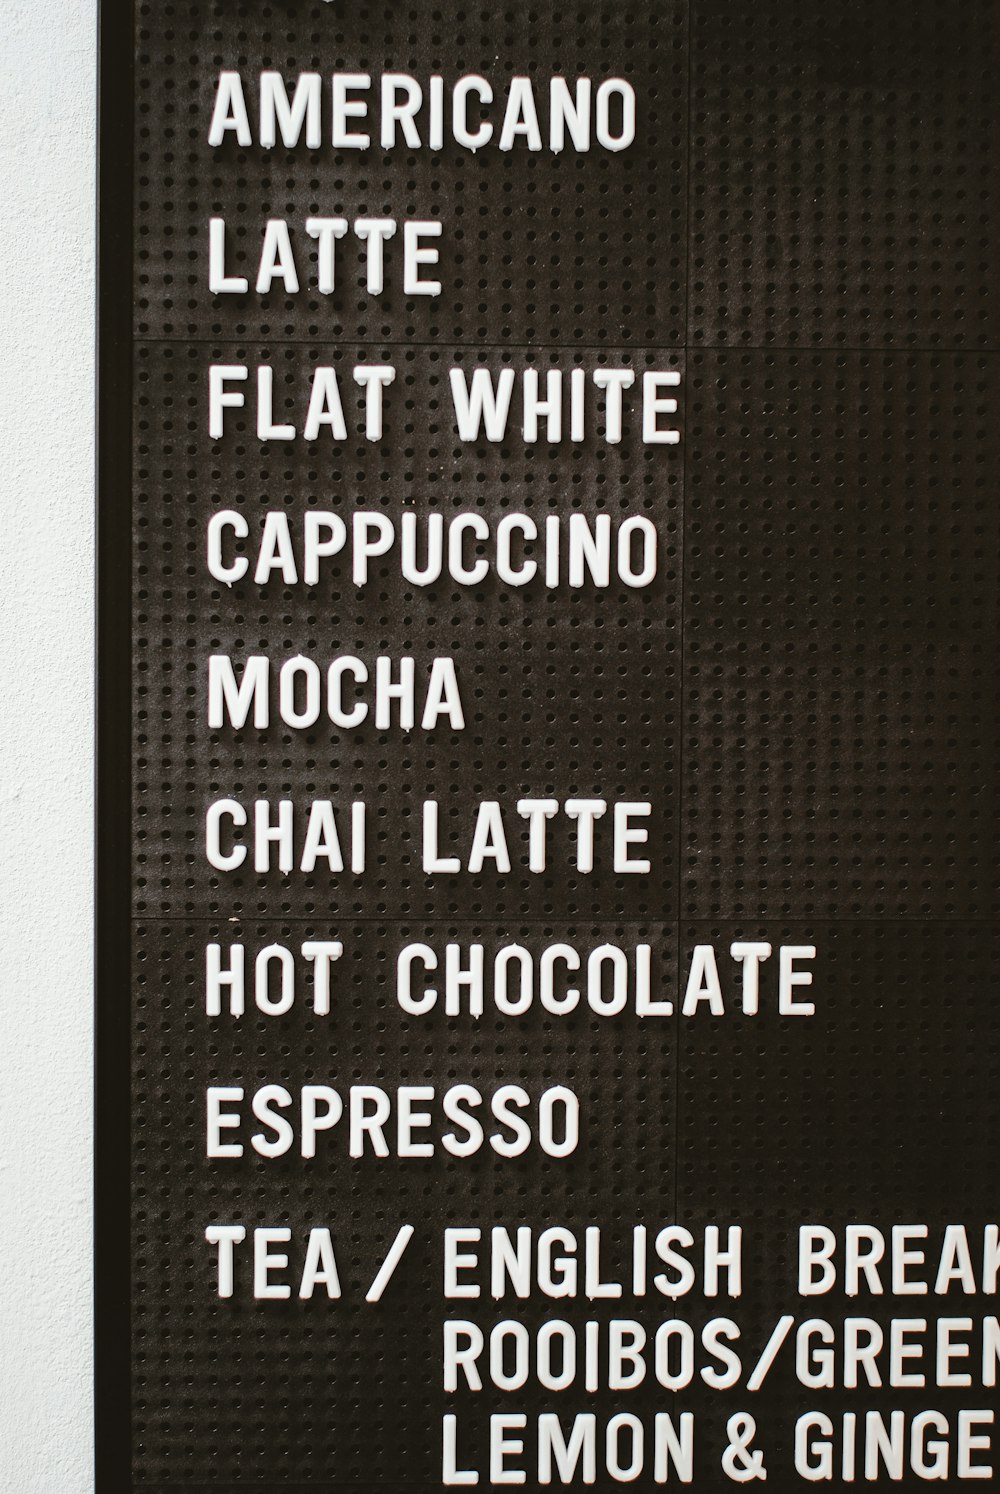 Americano latte flat shite cappuccino mocha Chai latte hot chocolate and espresso